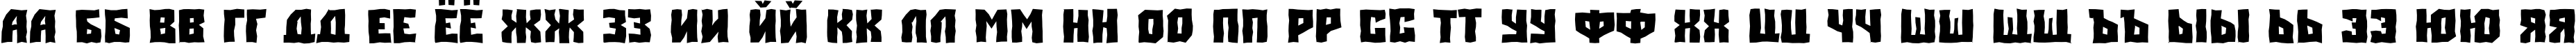 Пример написания русского алфавита шрифтом a_SimplerBrk Bold